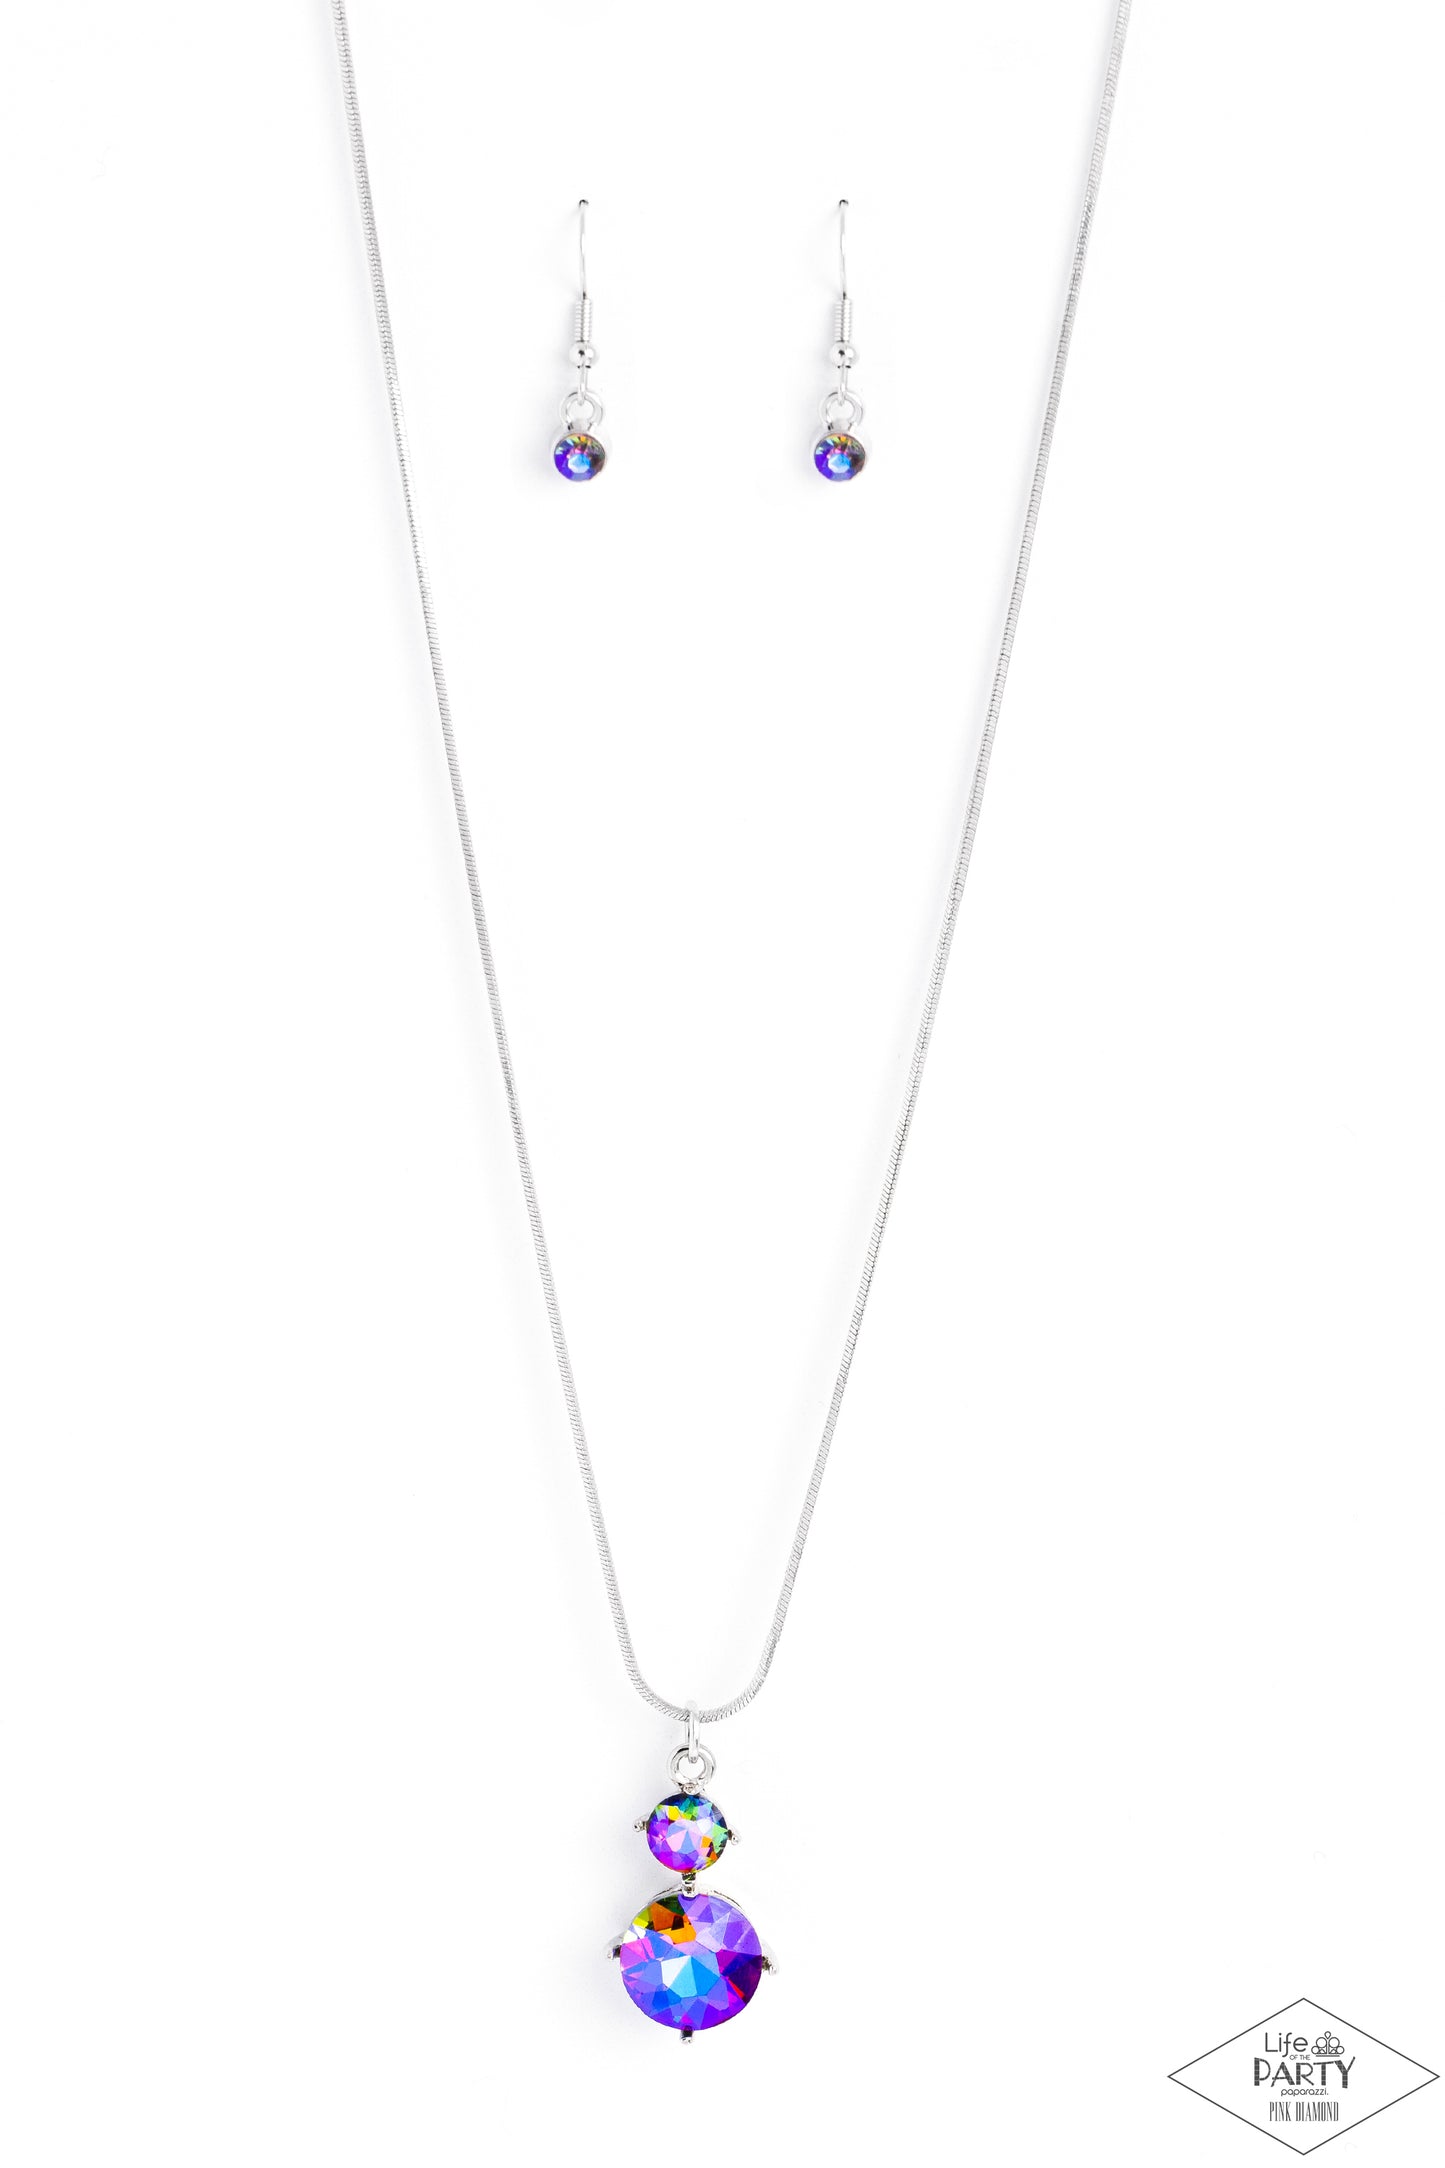 Paparazzi Top Dollar Diva - Blue Multi Necklace